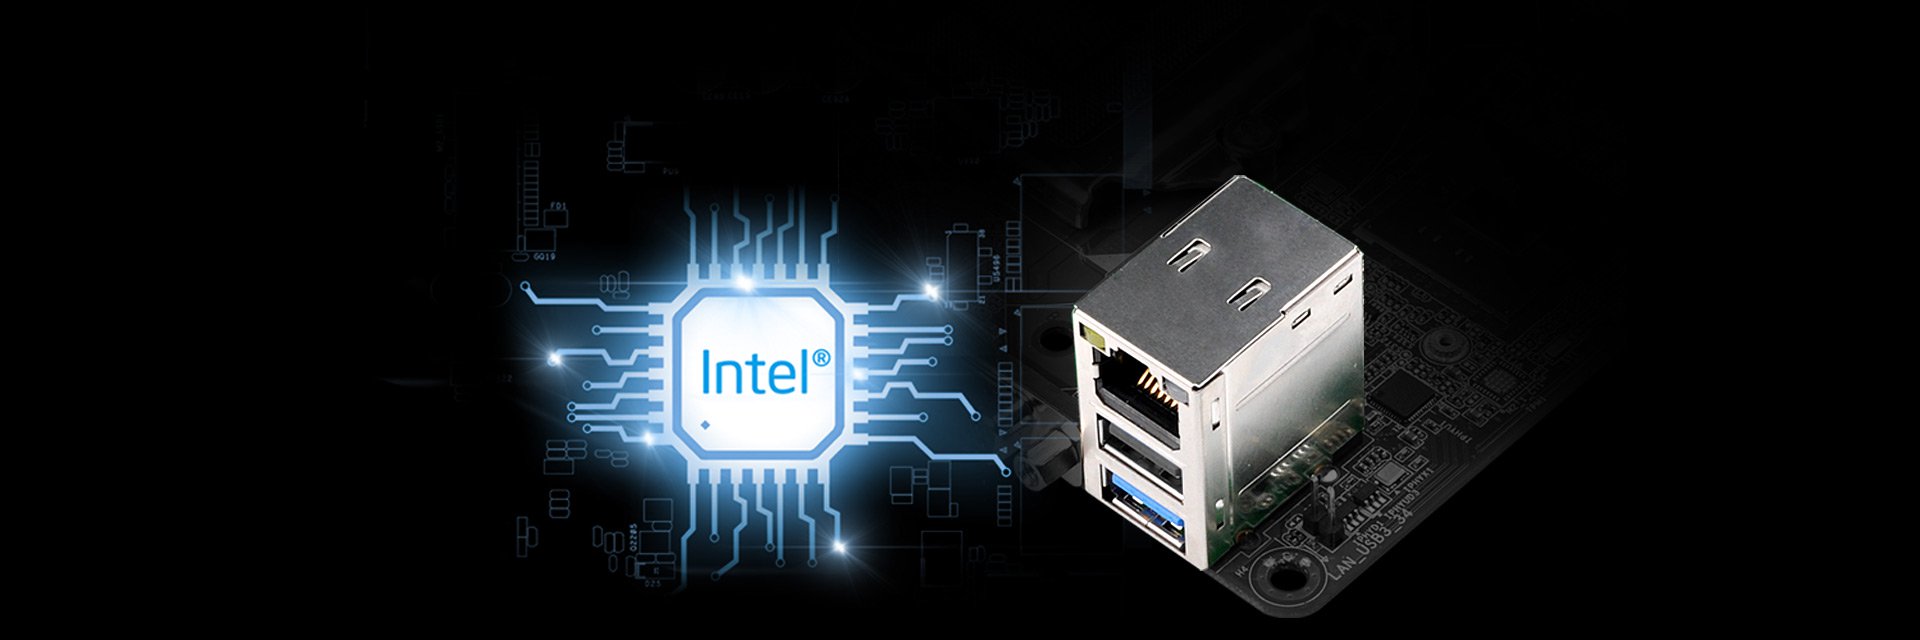 DM310 Intel LAN